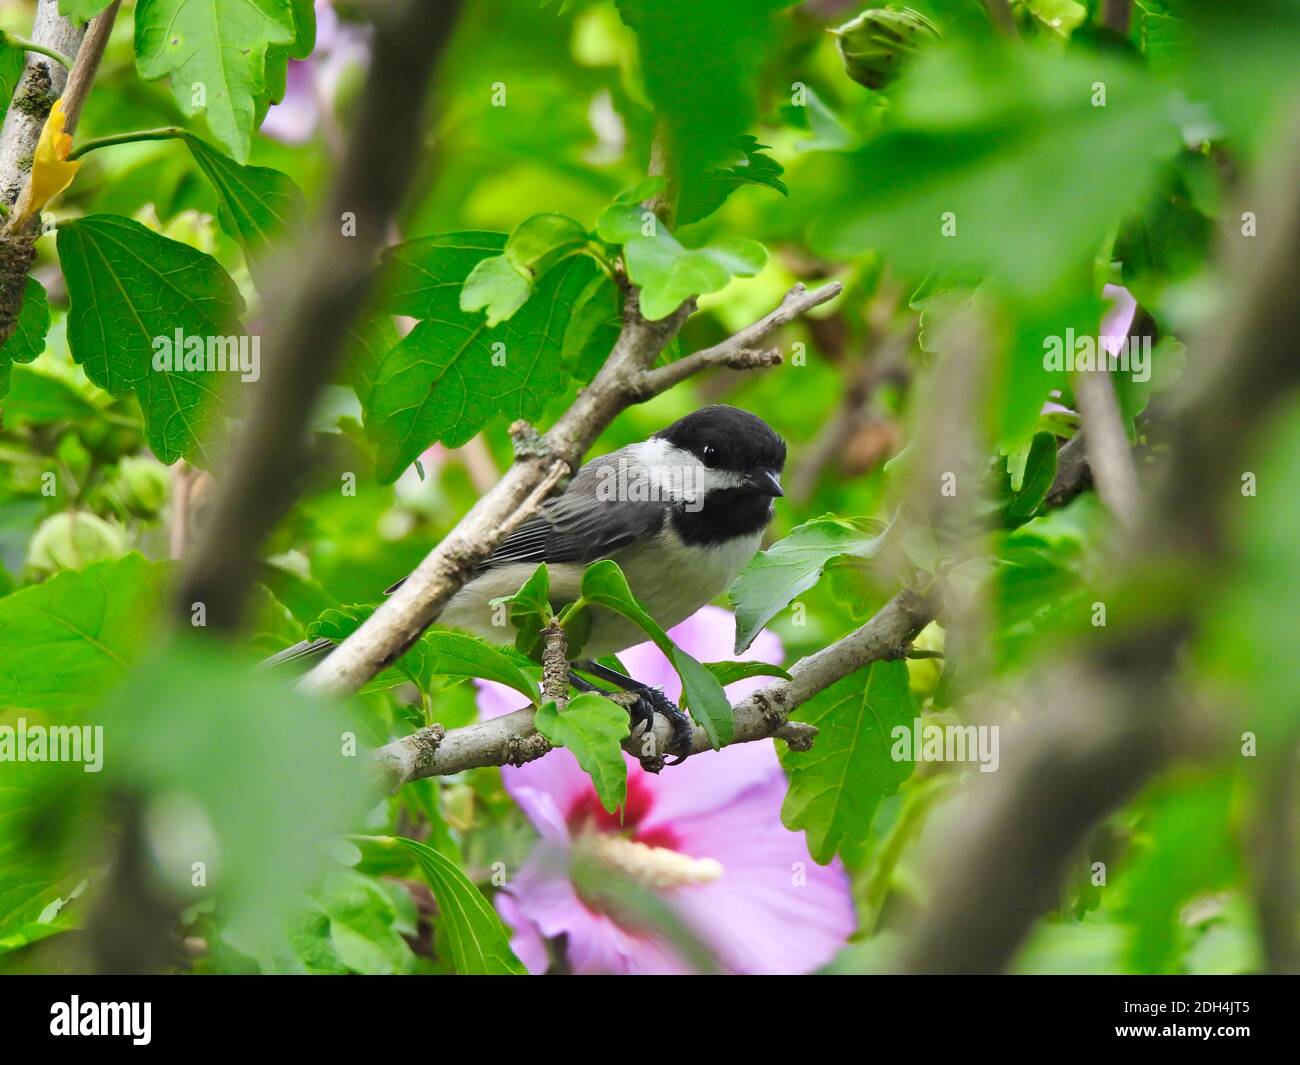 Chick-a-Dee Vogel im Hibiscus Blumenbusch versteckt zwischen grünen Blättern und Blumenblüten mit schwarzen, weißen und grauen Federn Stockfoto